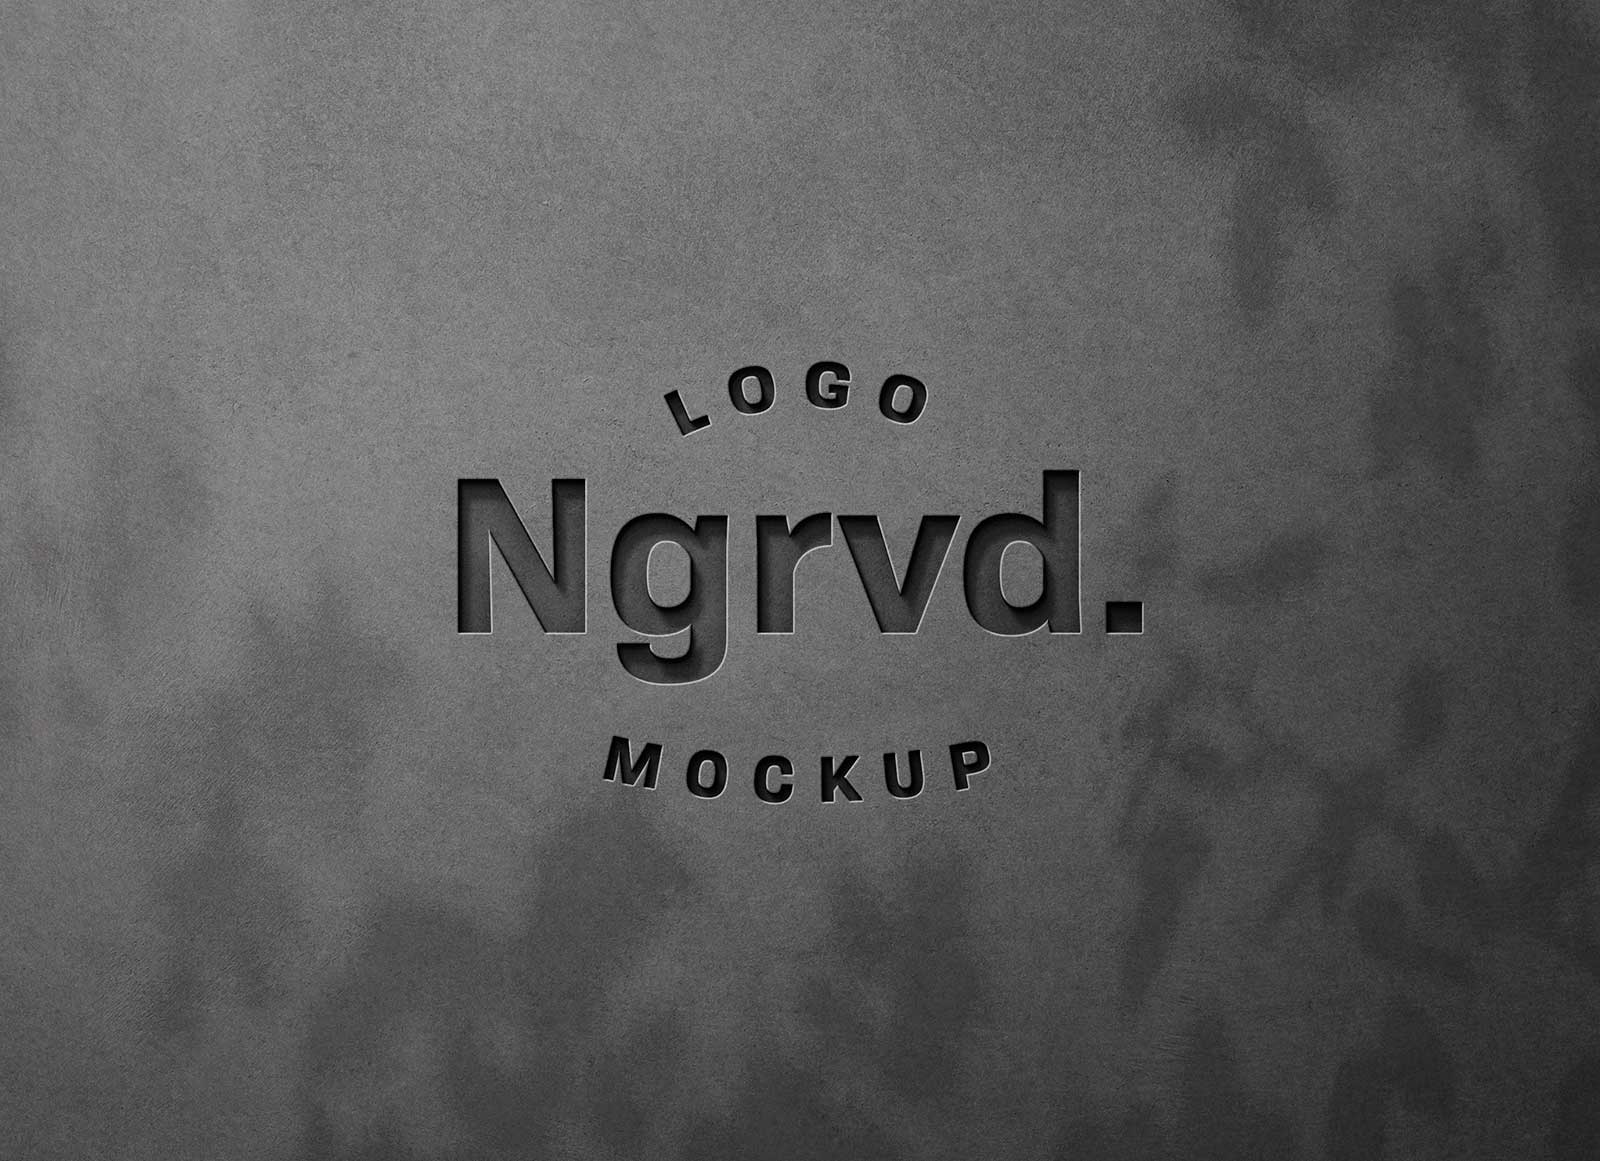 Wall Engraved Logo Mockup PSD Free Download